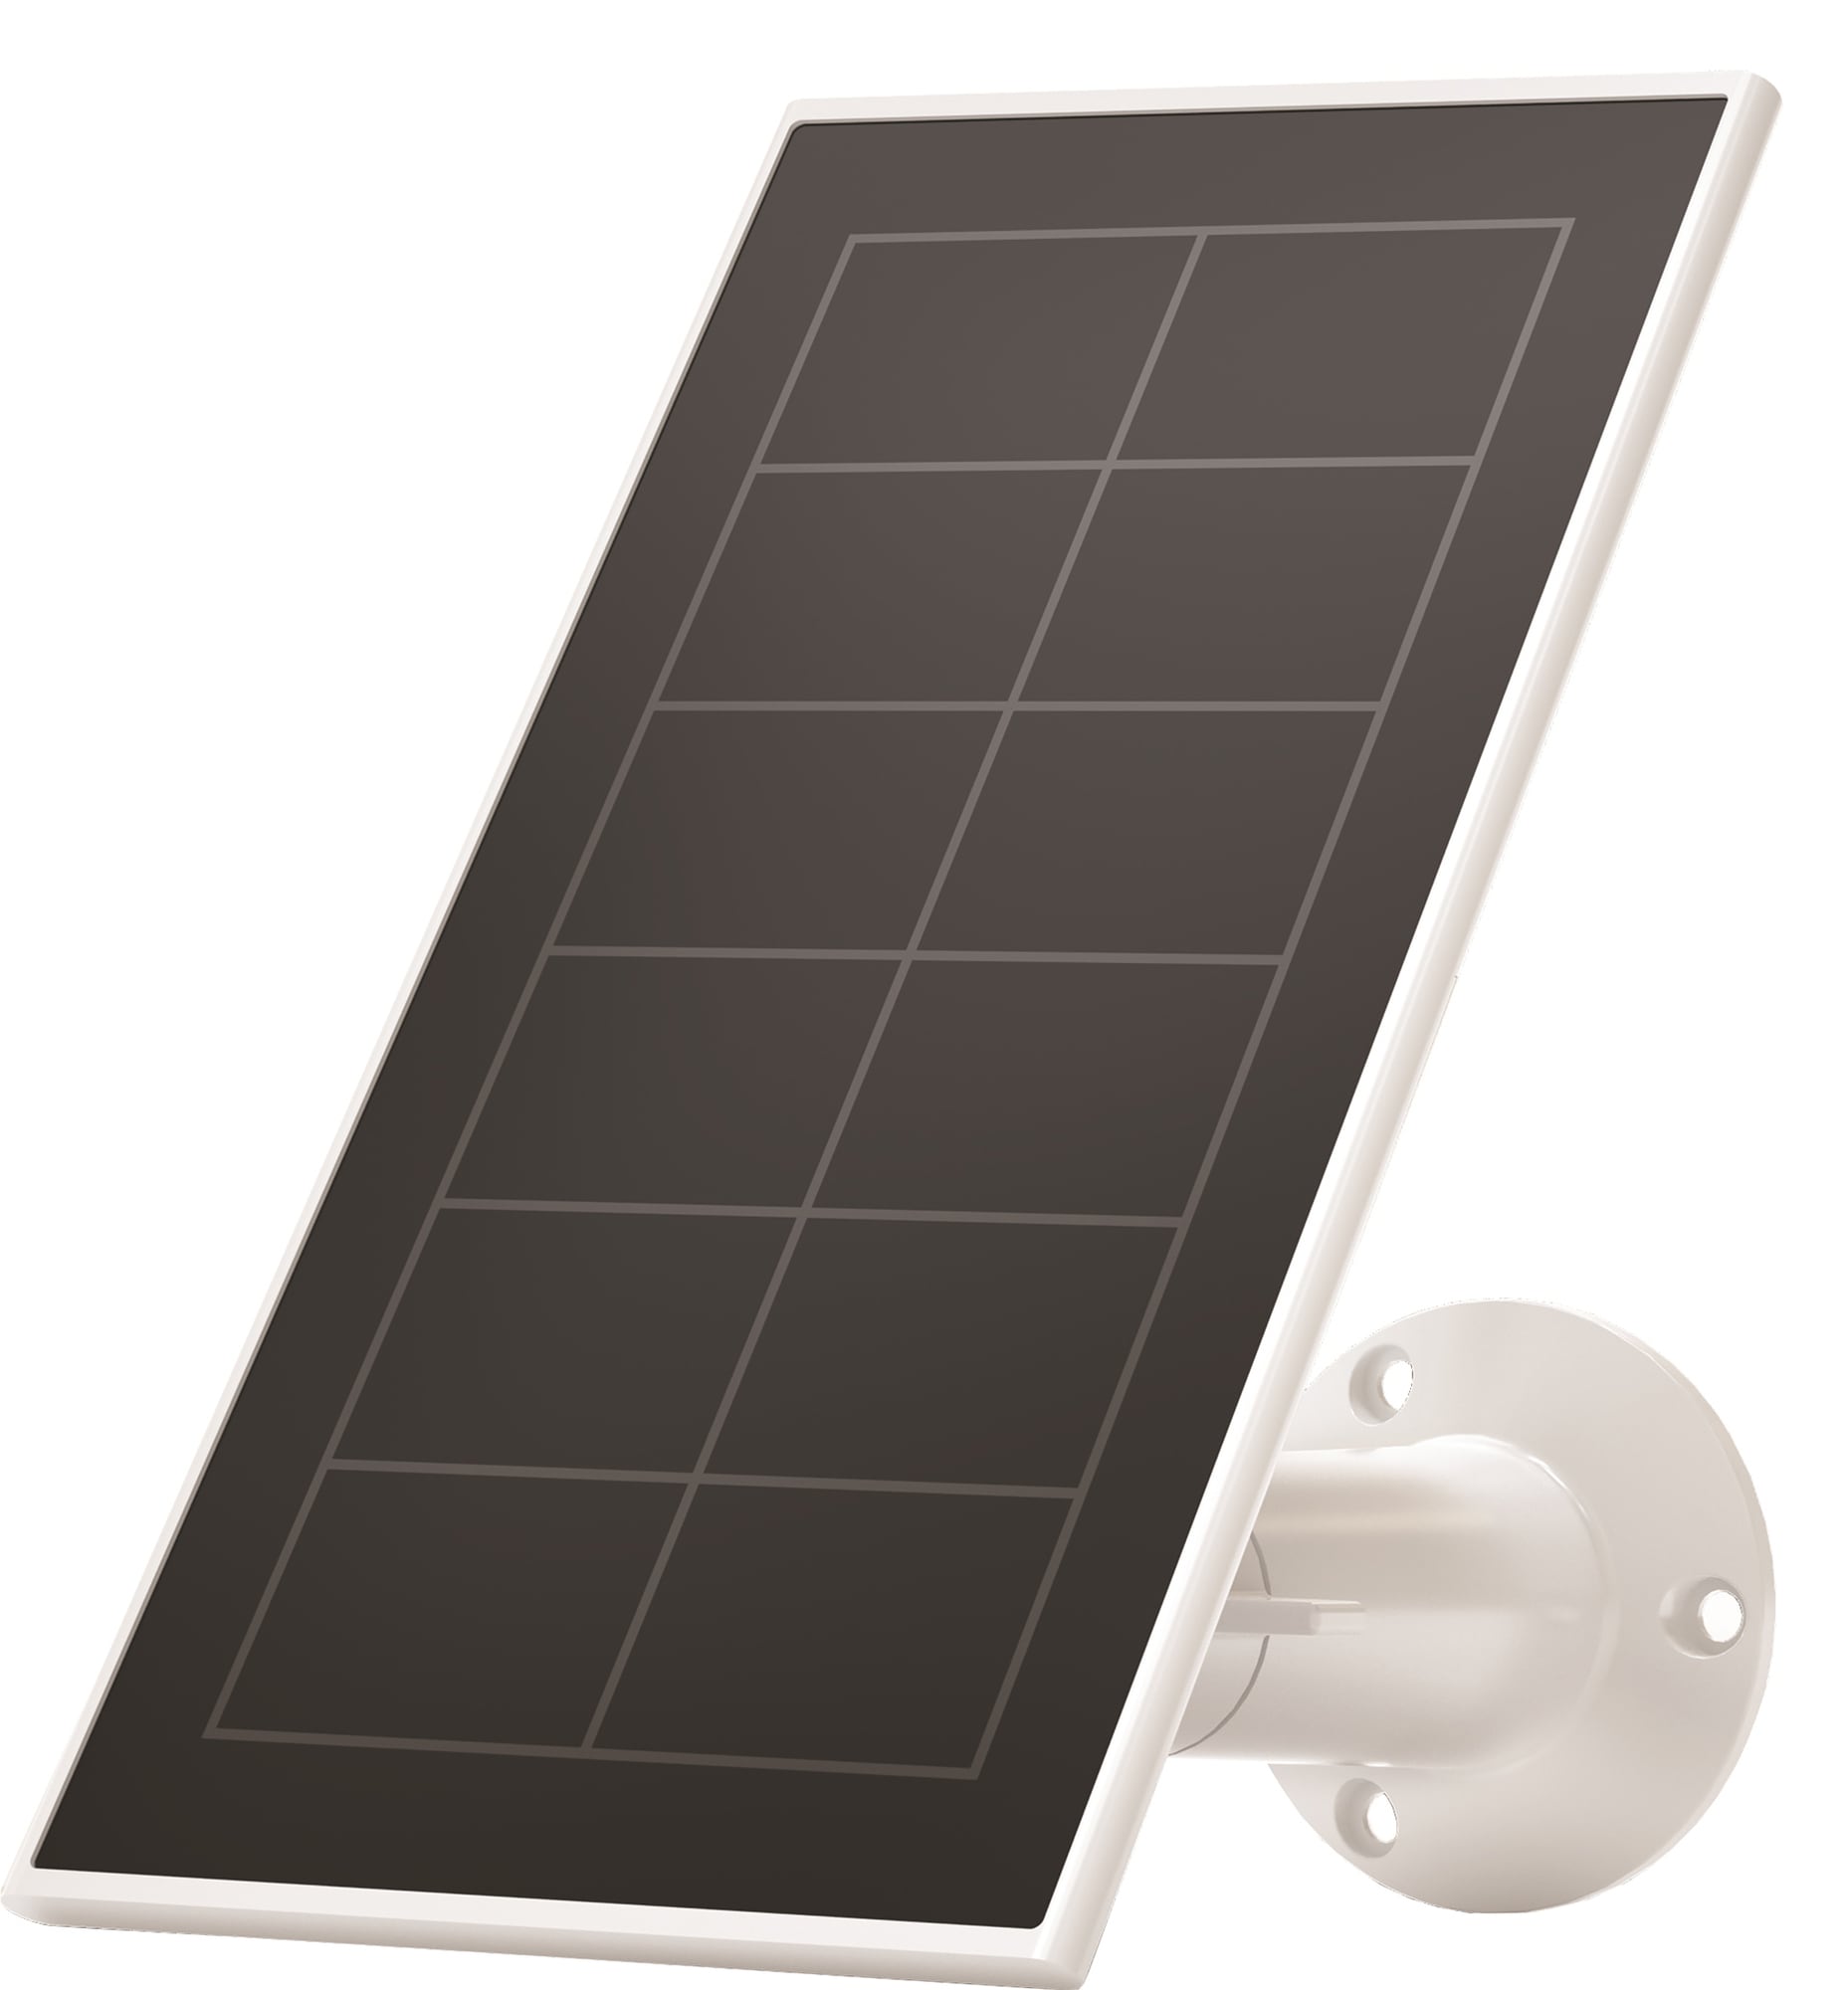 Arlo Solar Panel Charger laturi Ultra, Pro 3 ja Pro 4 kameroille (va.) Gigantti verkkokauppa